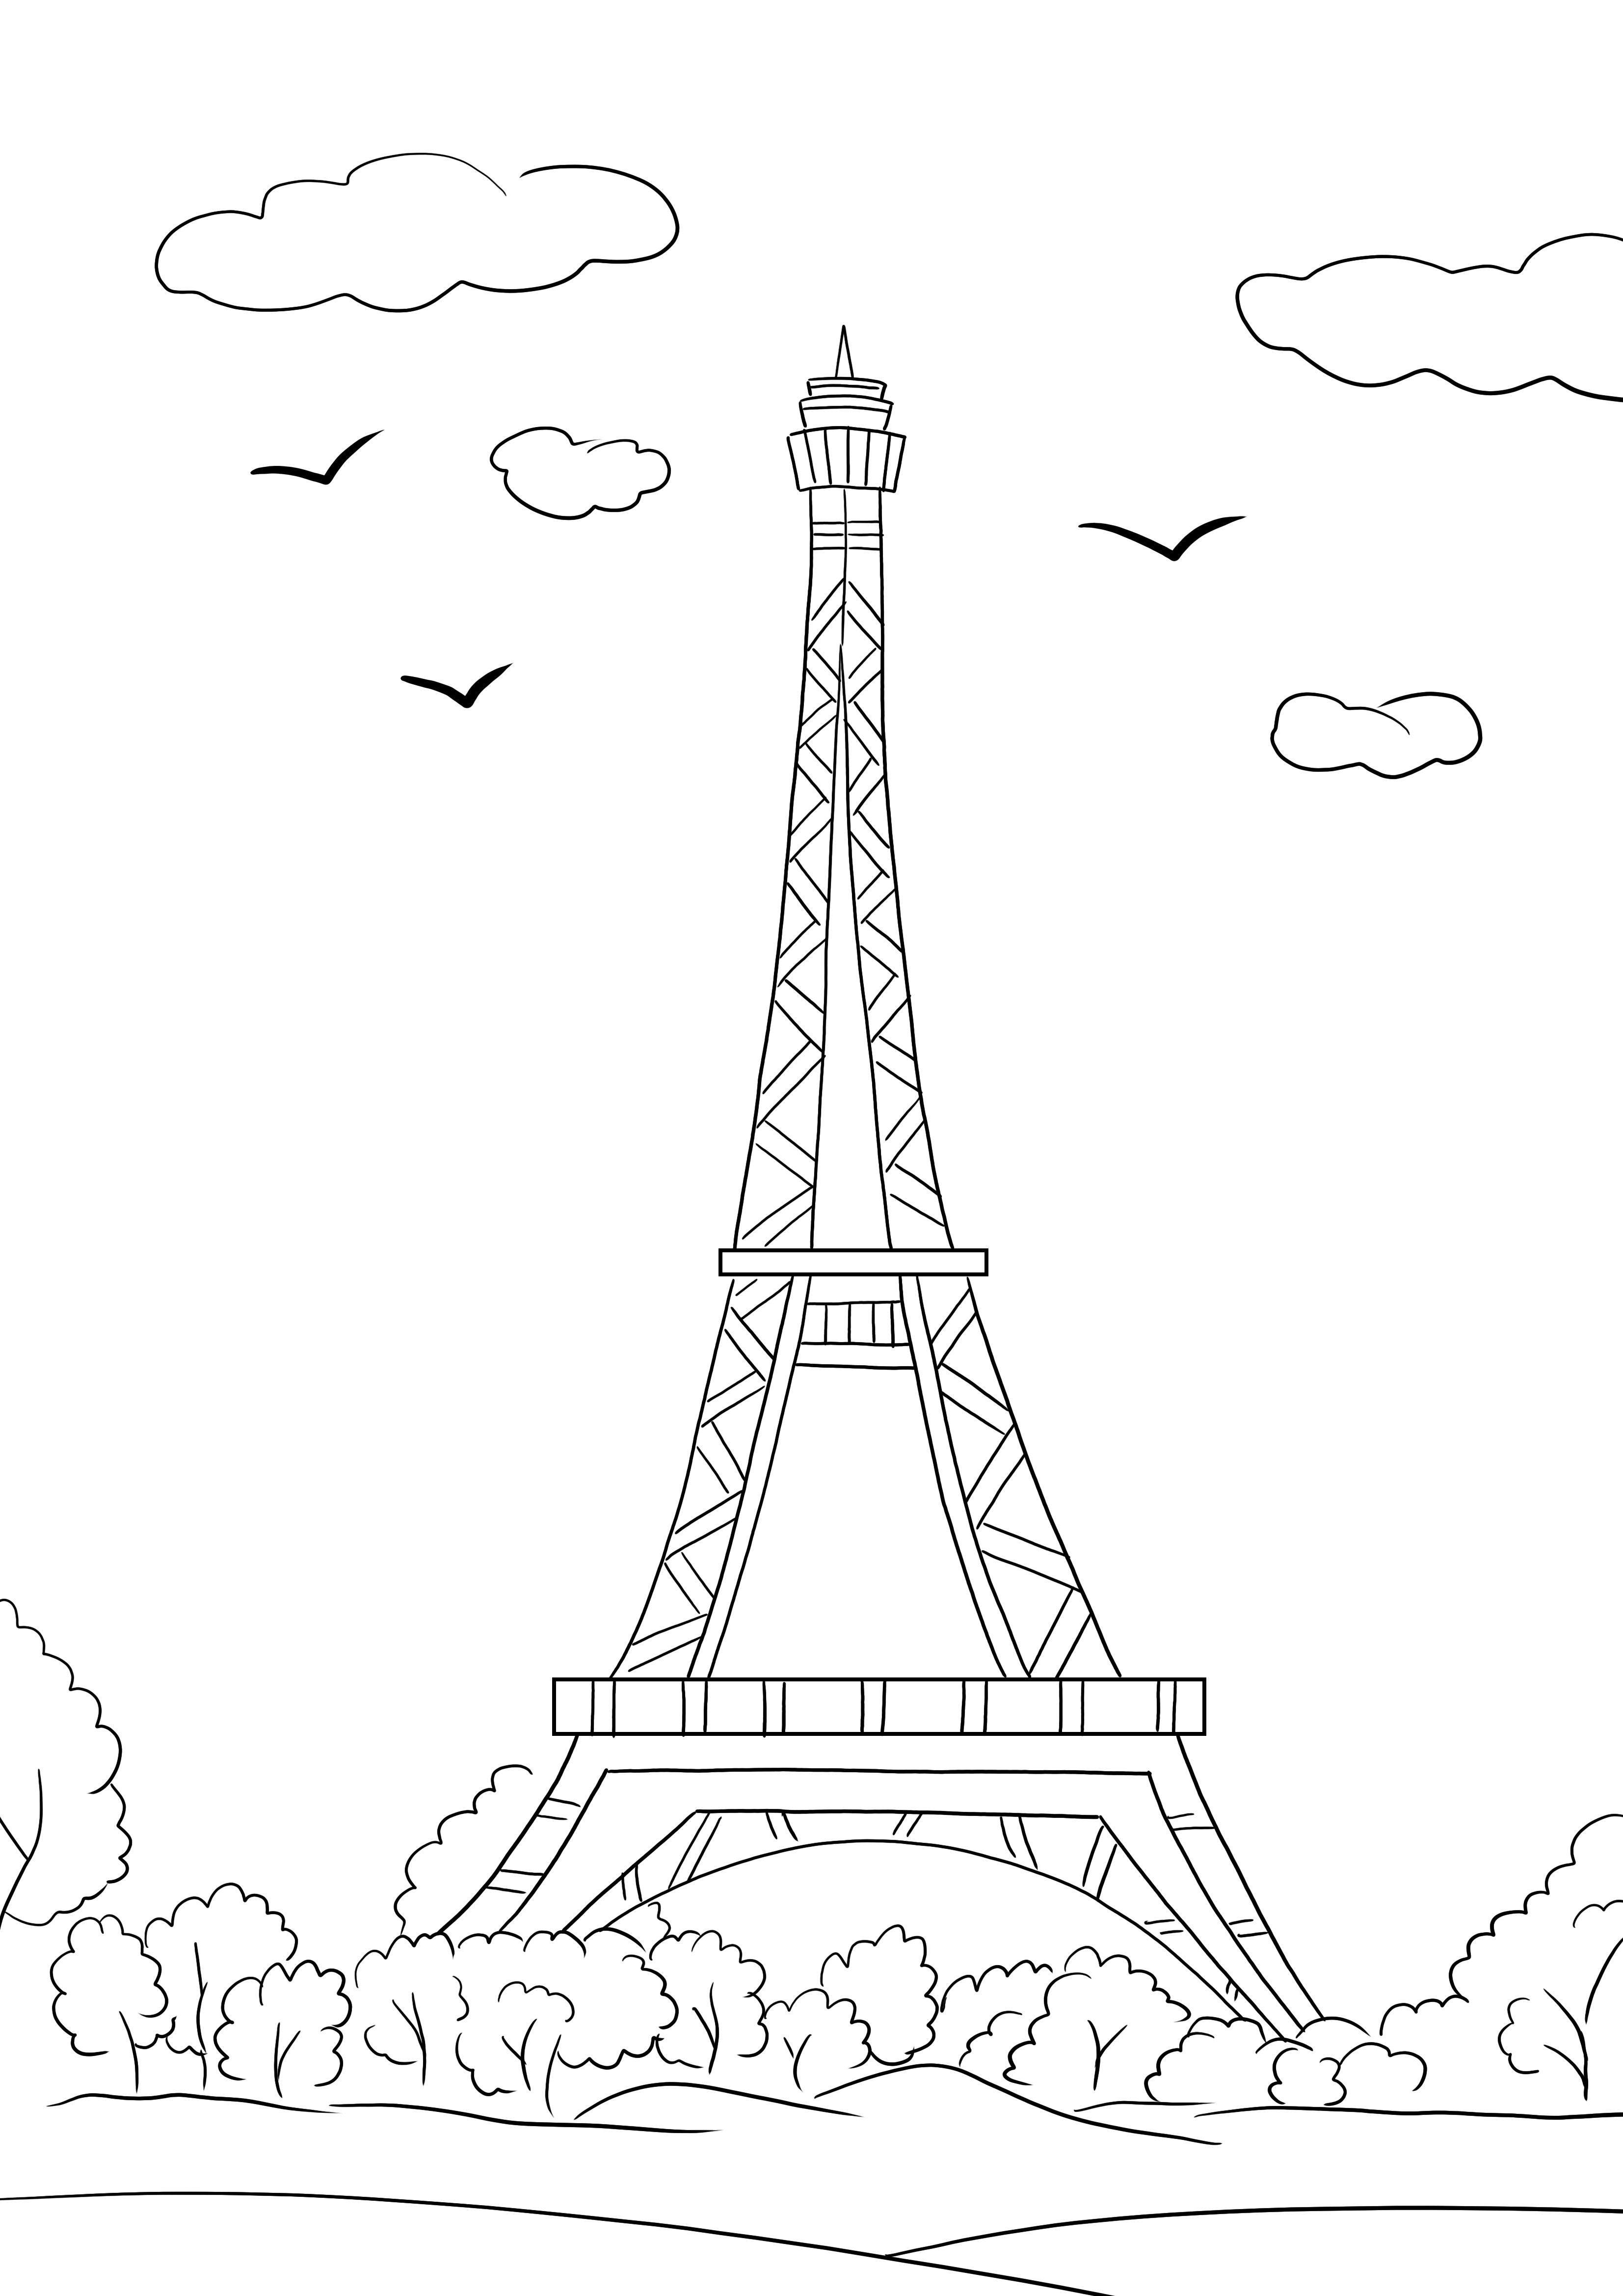 Turnul Eiffel se imprimă și se colorează gratuit pentru a afla mai multe despre monumentele celebre